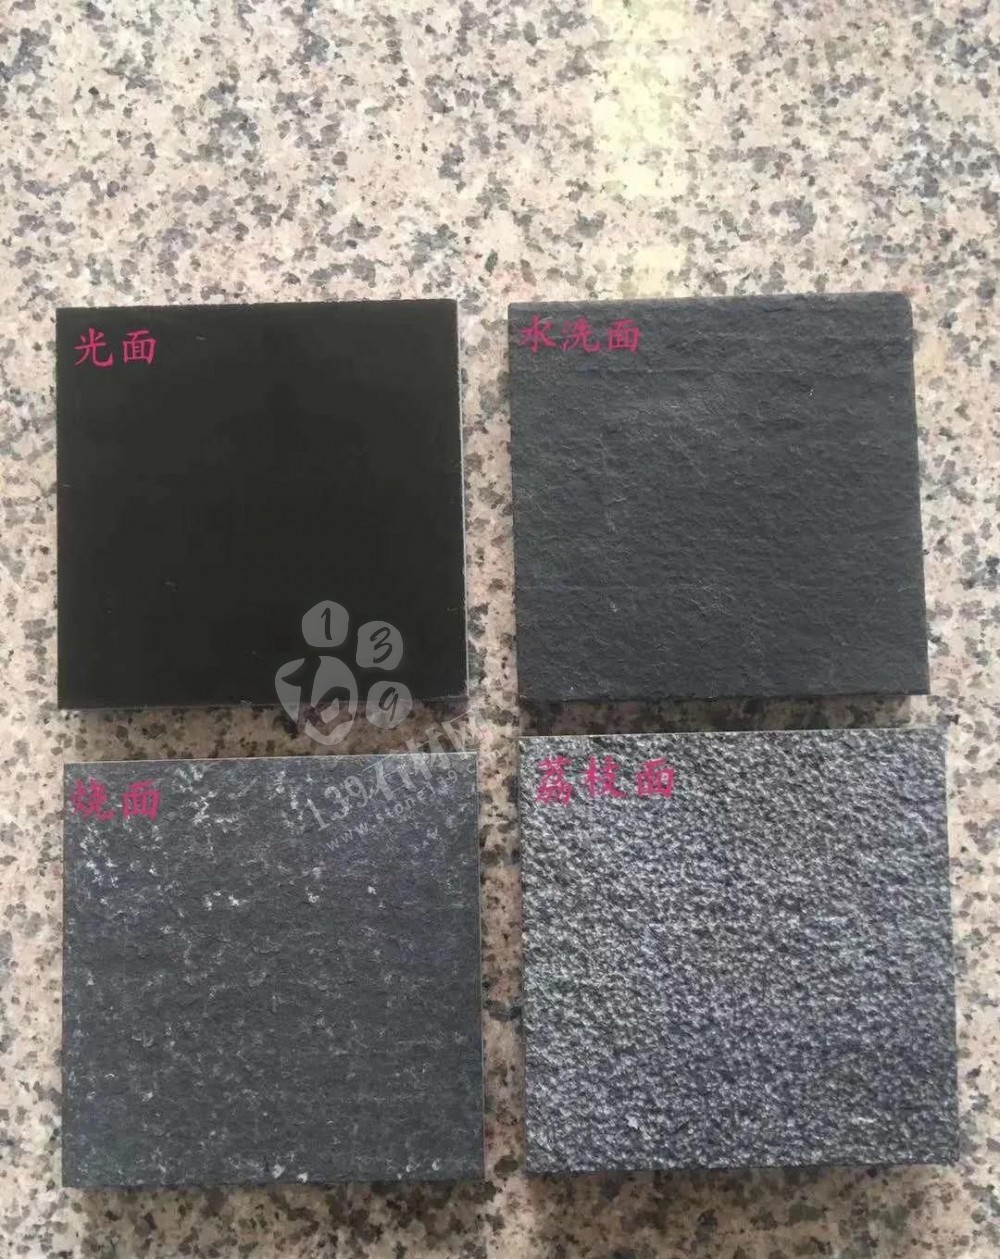 中国黑石材新矿分布情况介绍